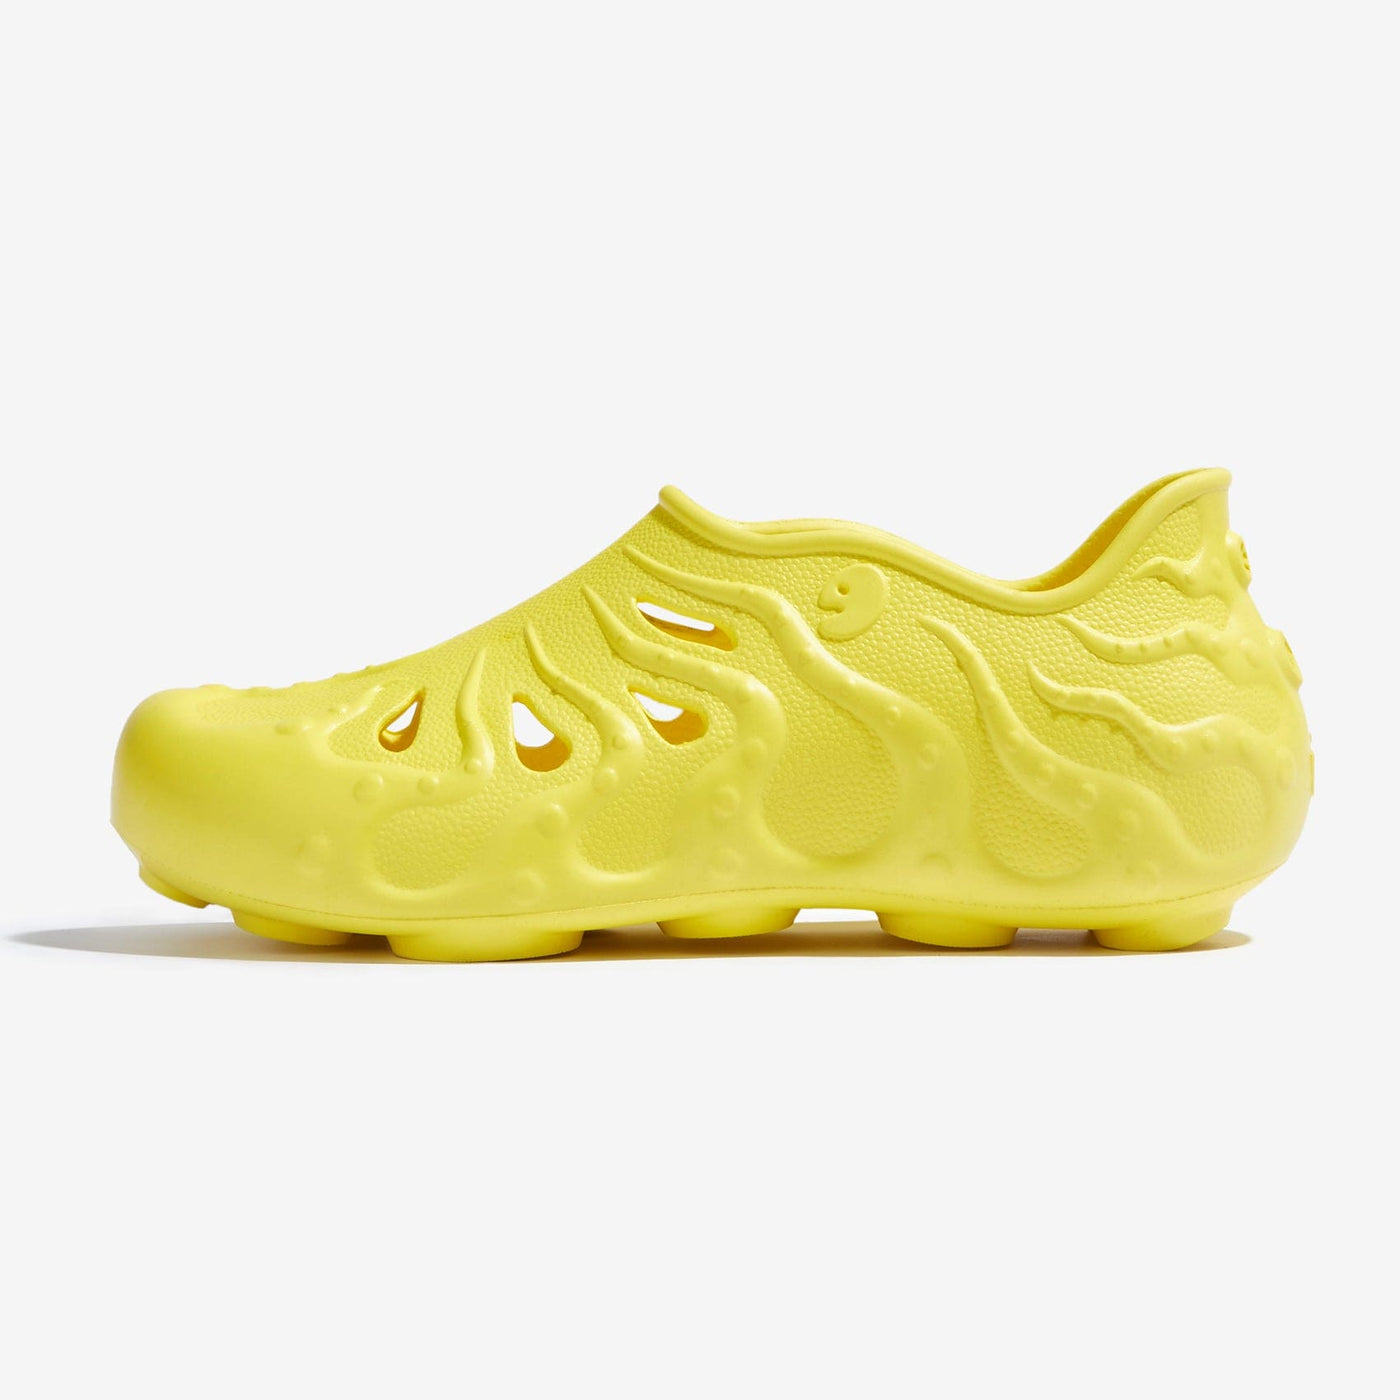 UIN Footwear Women Maize Yellow Octopus II Women Canvas loafers